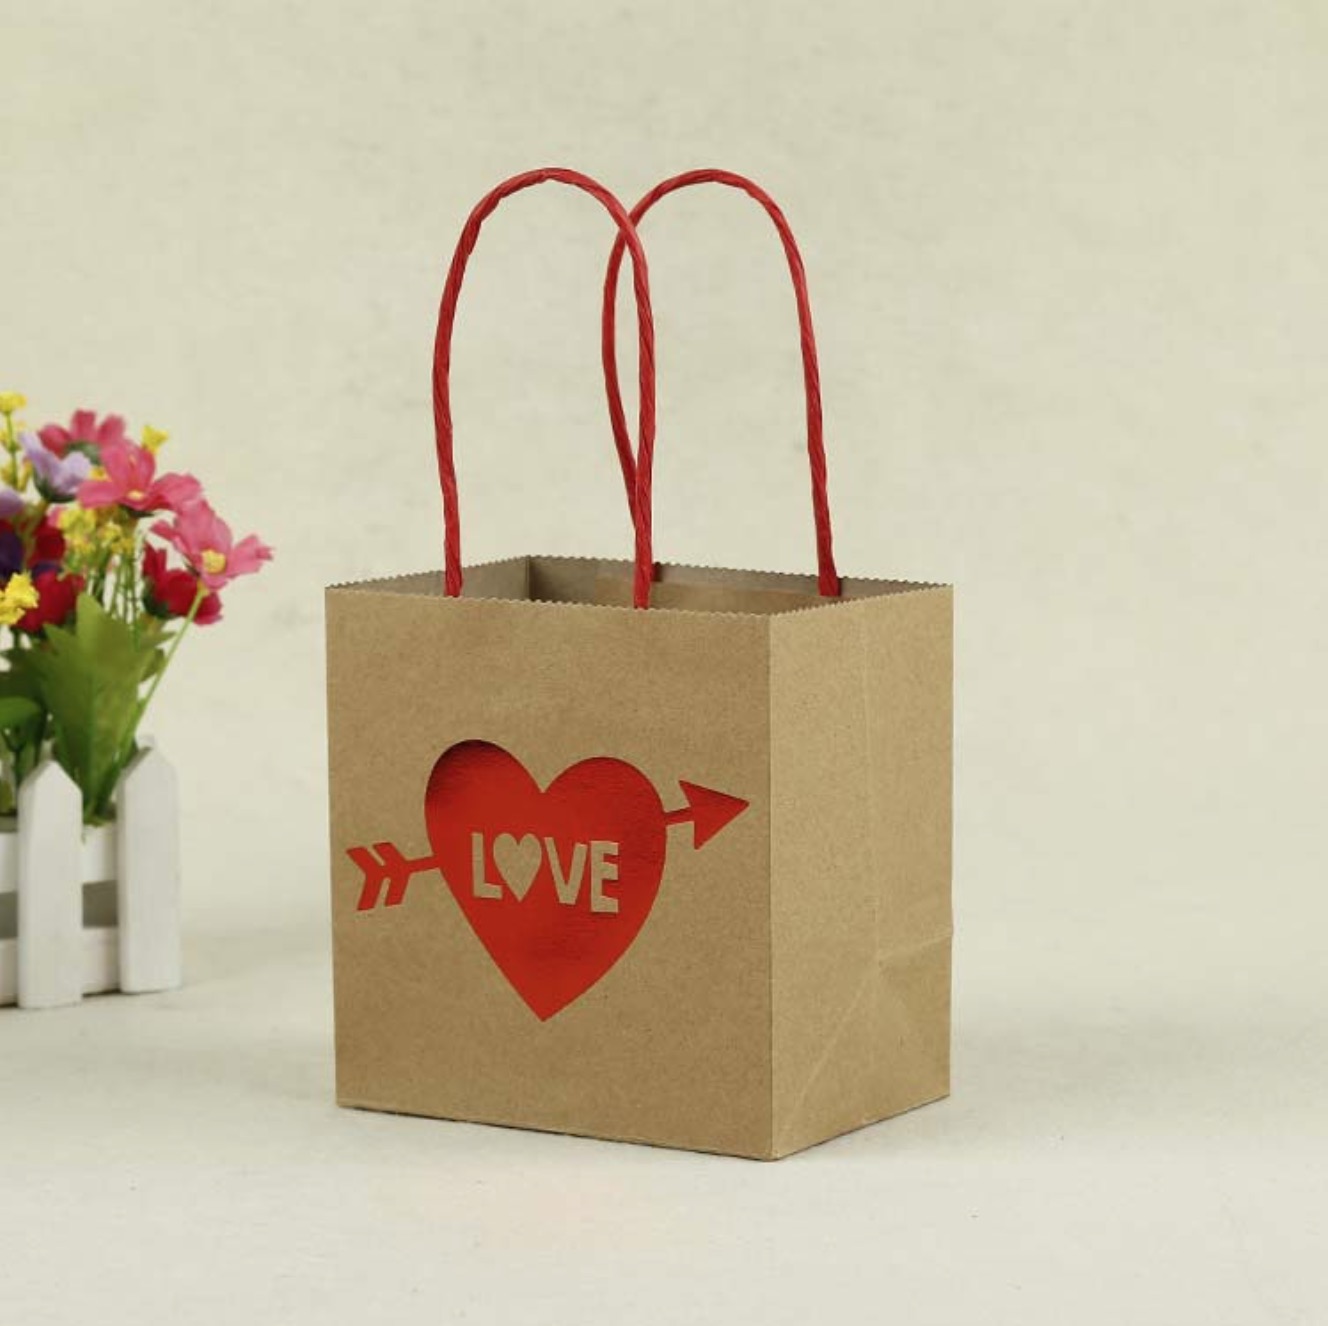 Paper T Bag Make Up Paper Bag Cosmetic Paper Bag Cardboard Bag For Cosmetics Nice T Box 4568